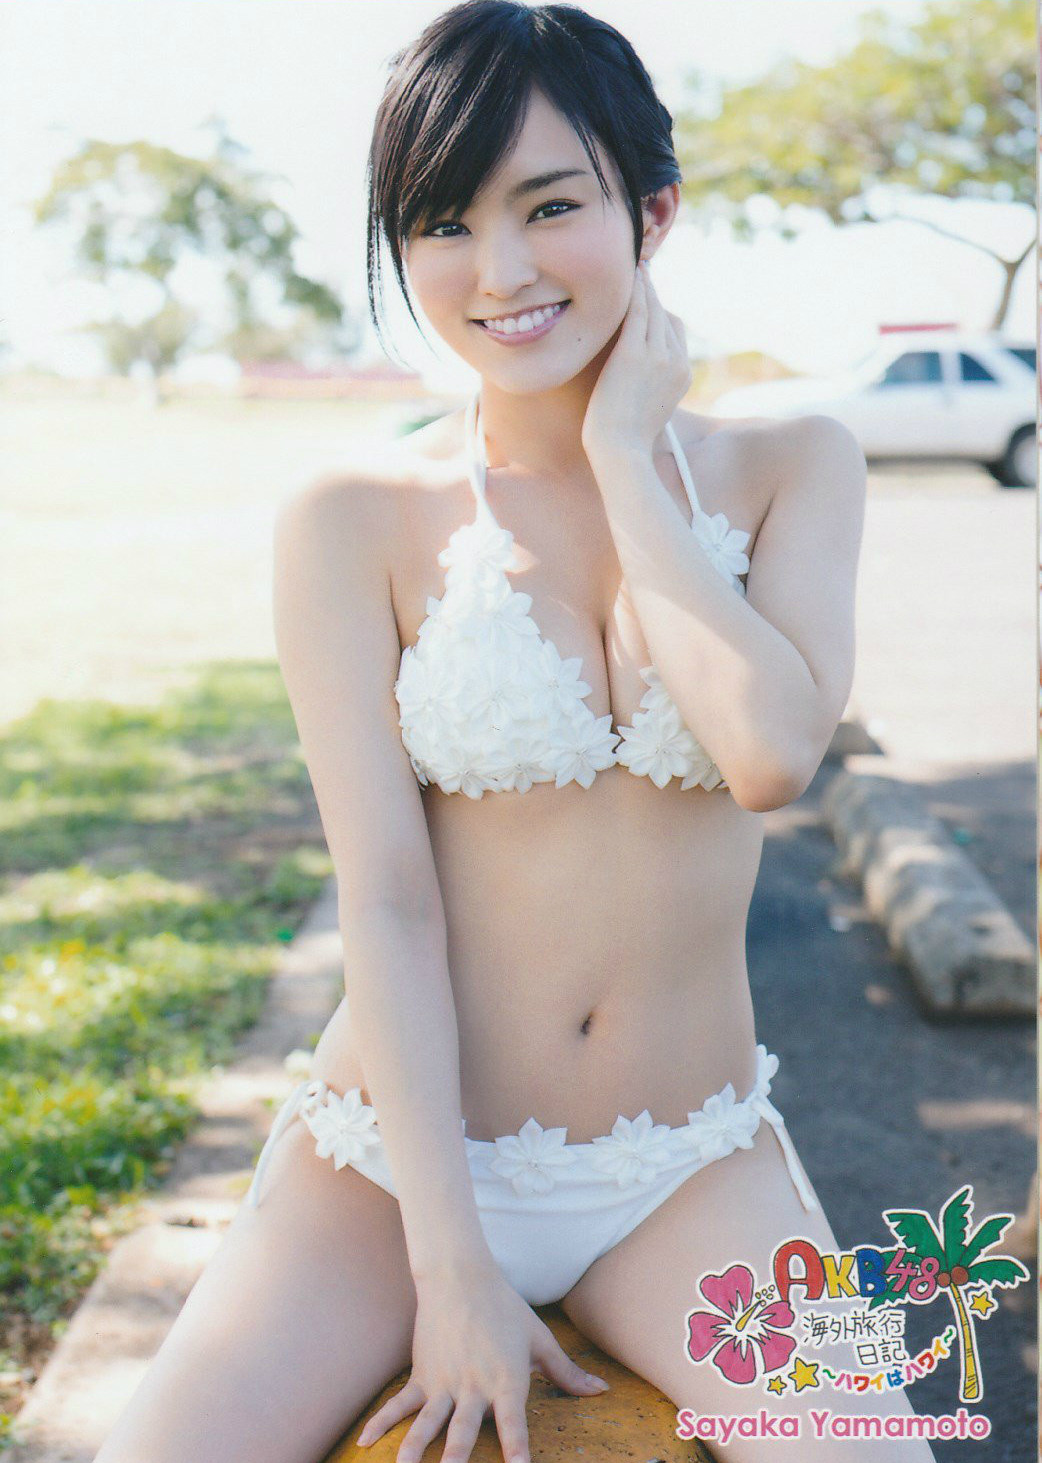 03 - Yamamoto Sayaka - Top 10 Most Erotic AKB48 SKE48 NMB48 HKT48 Members